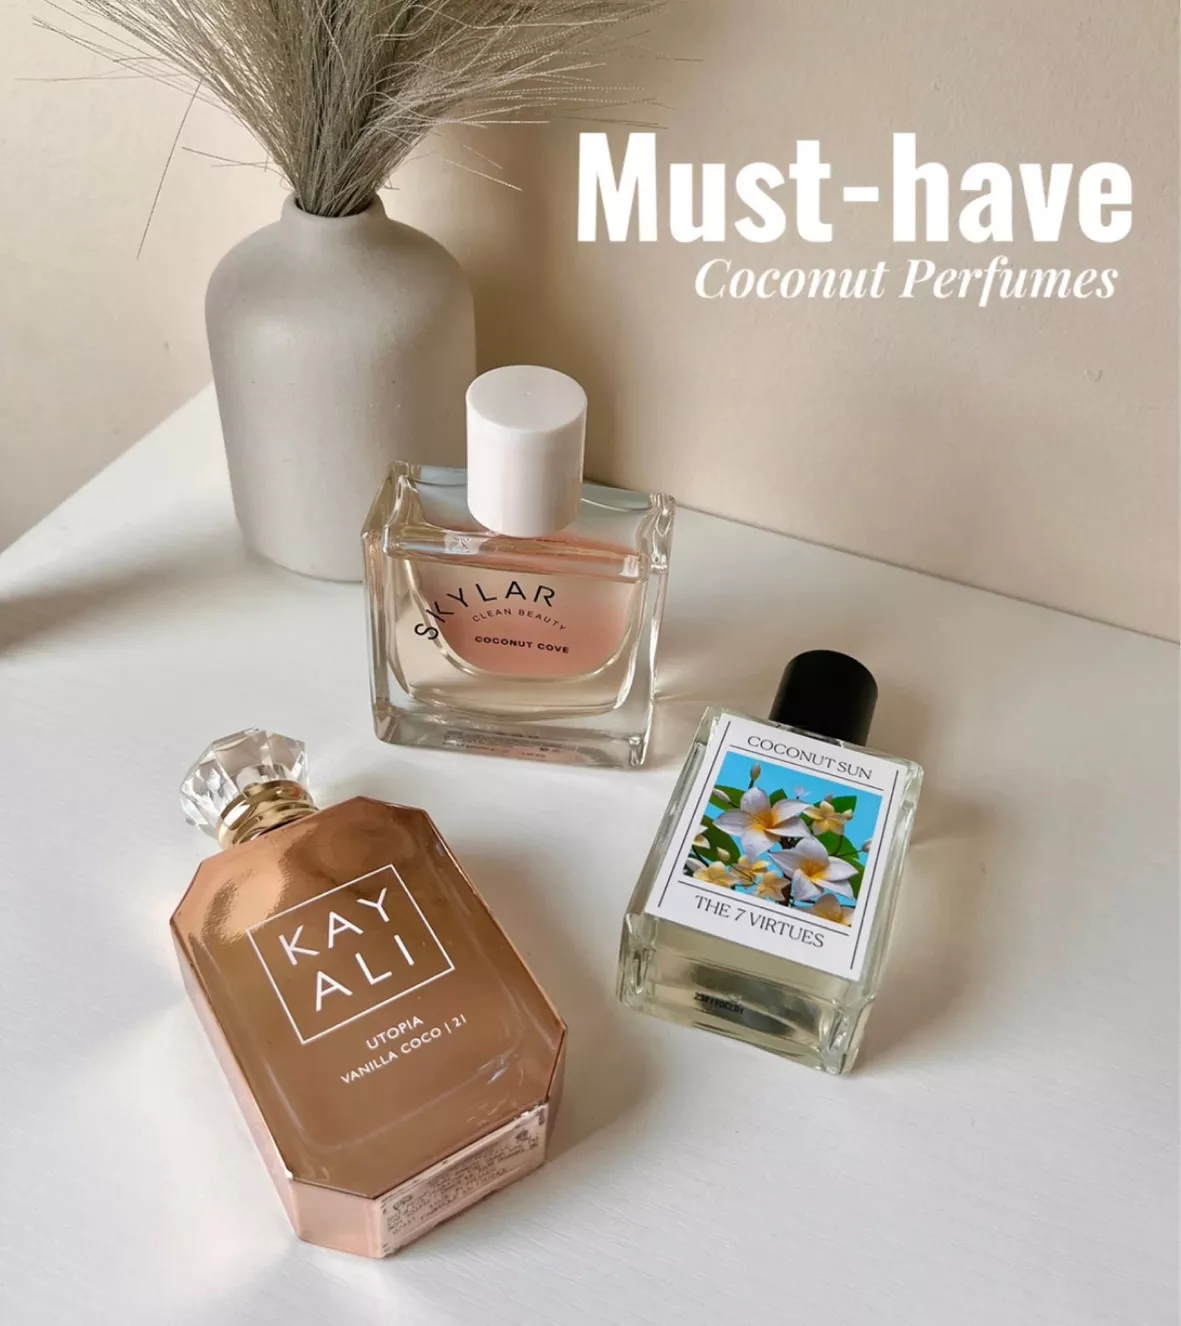 Coconut Sun Eau de Parfum - The 7 … curated on LTK